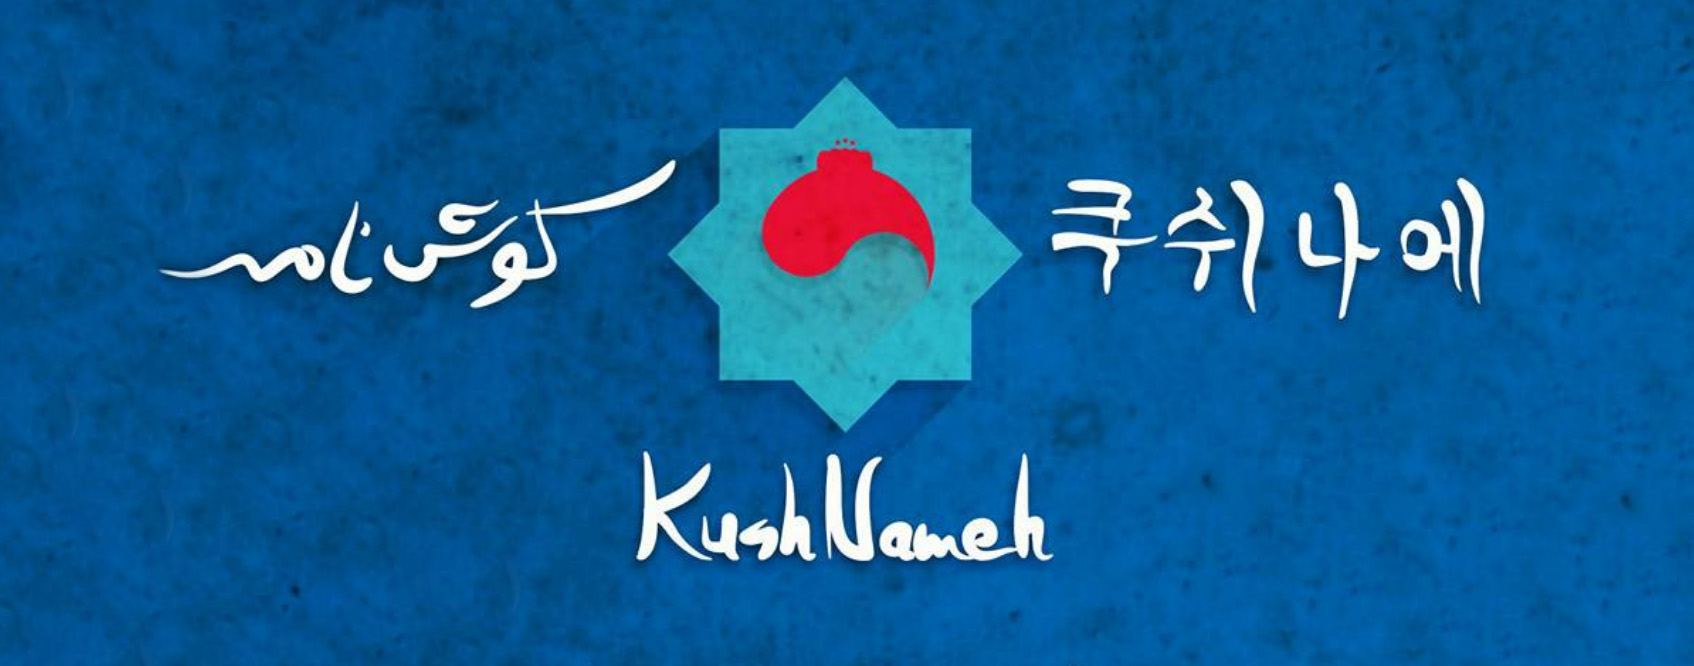 Kushnameh